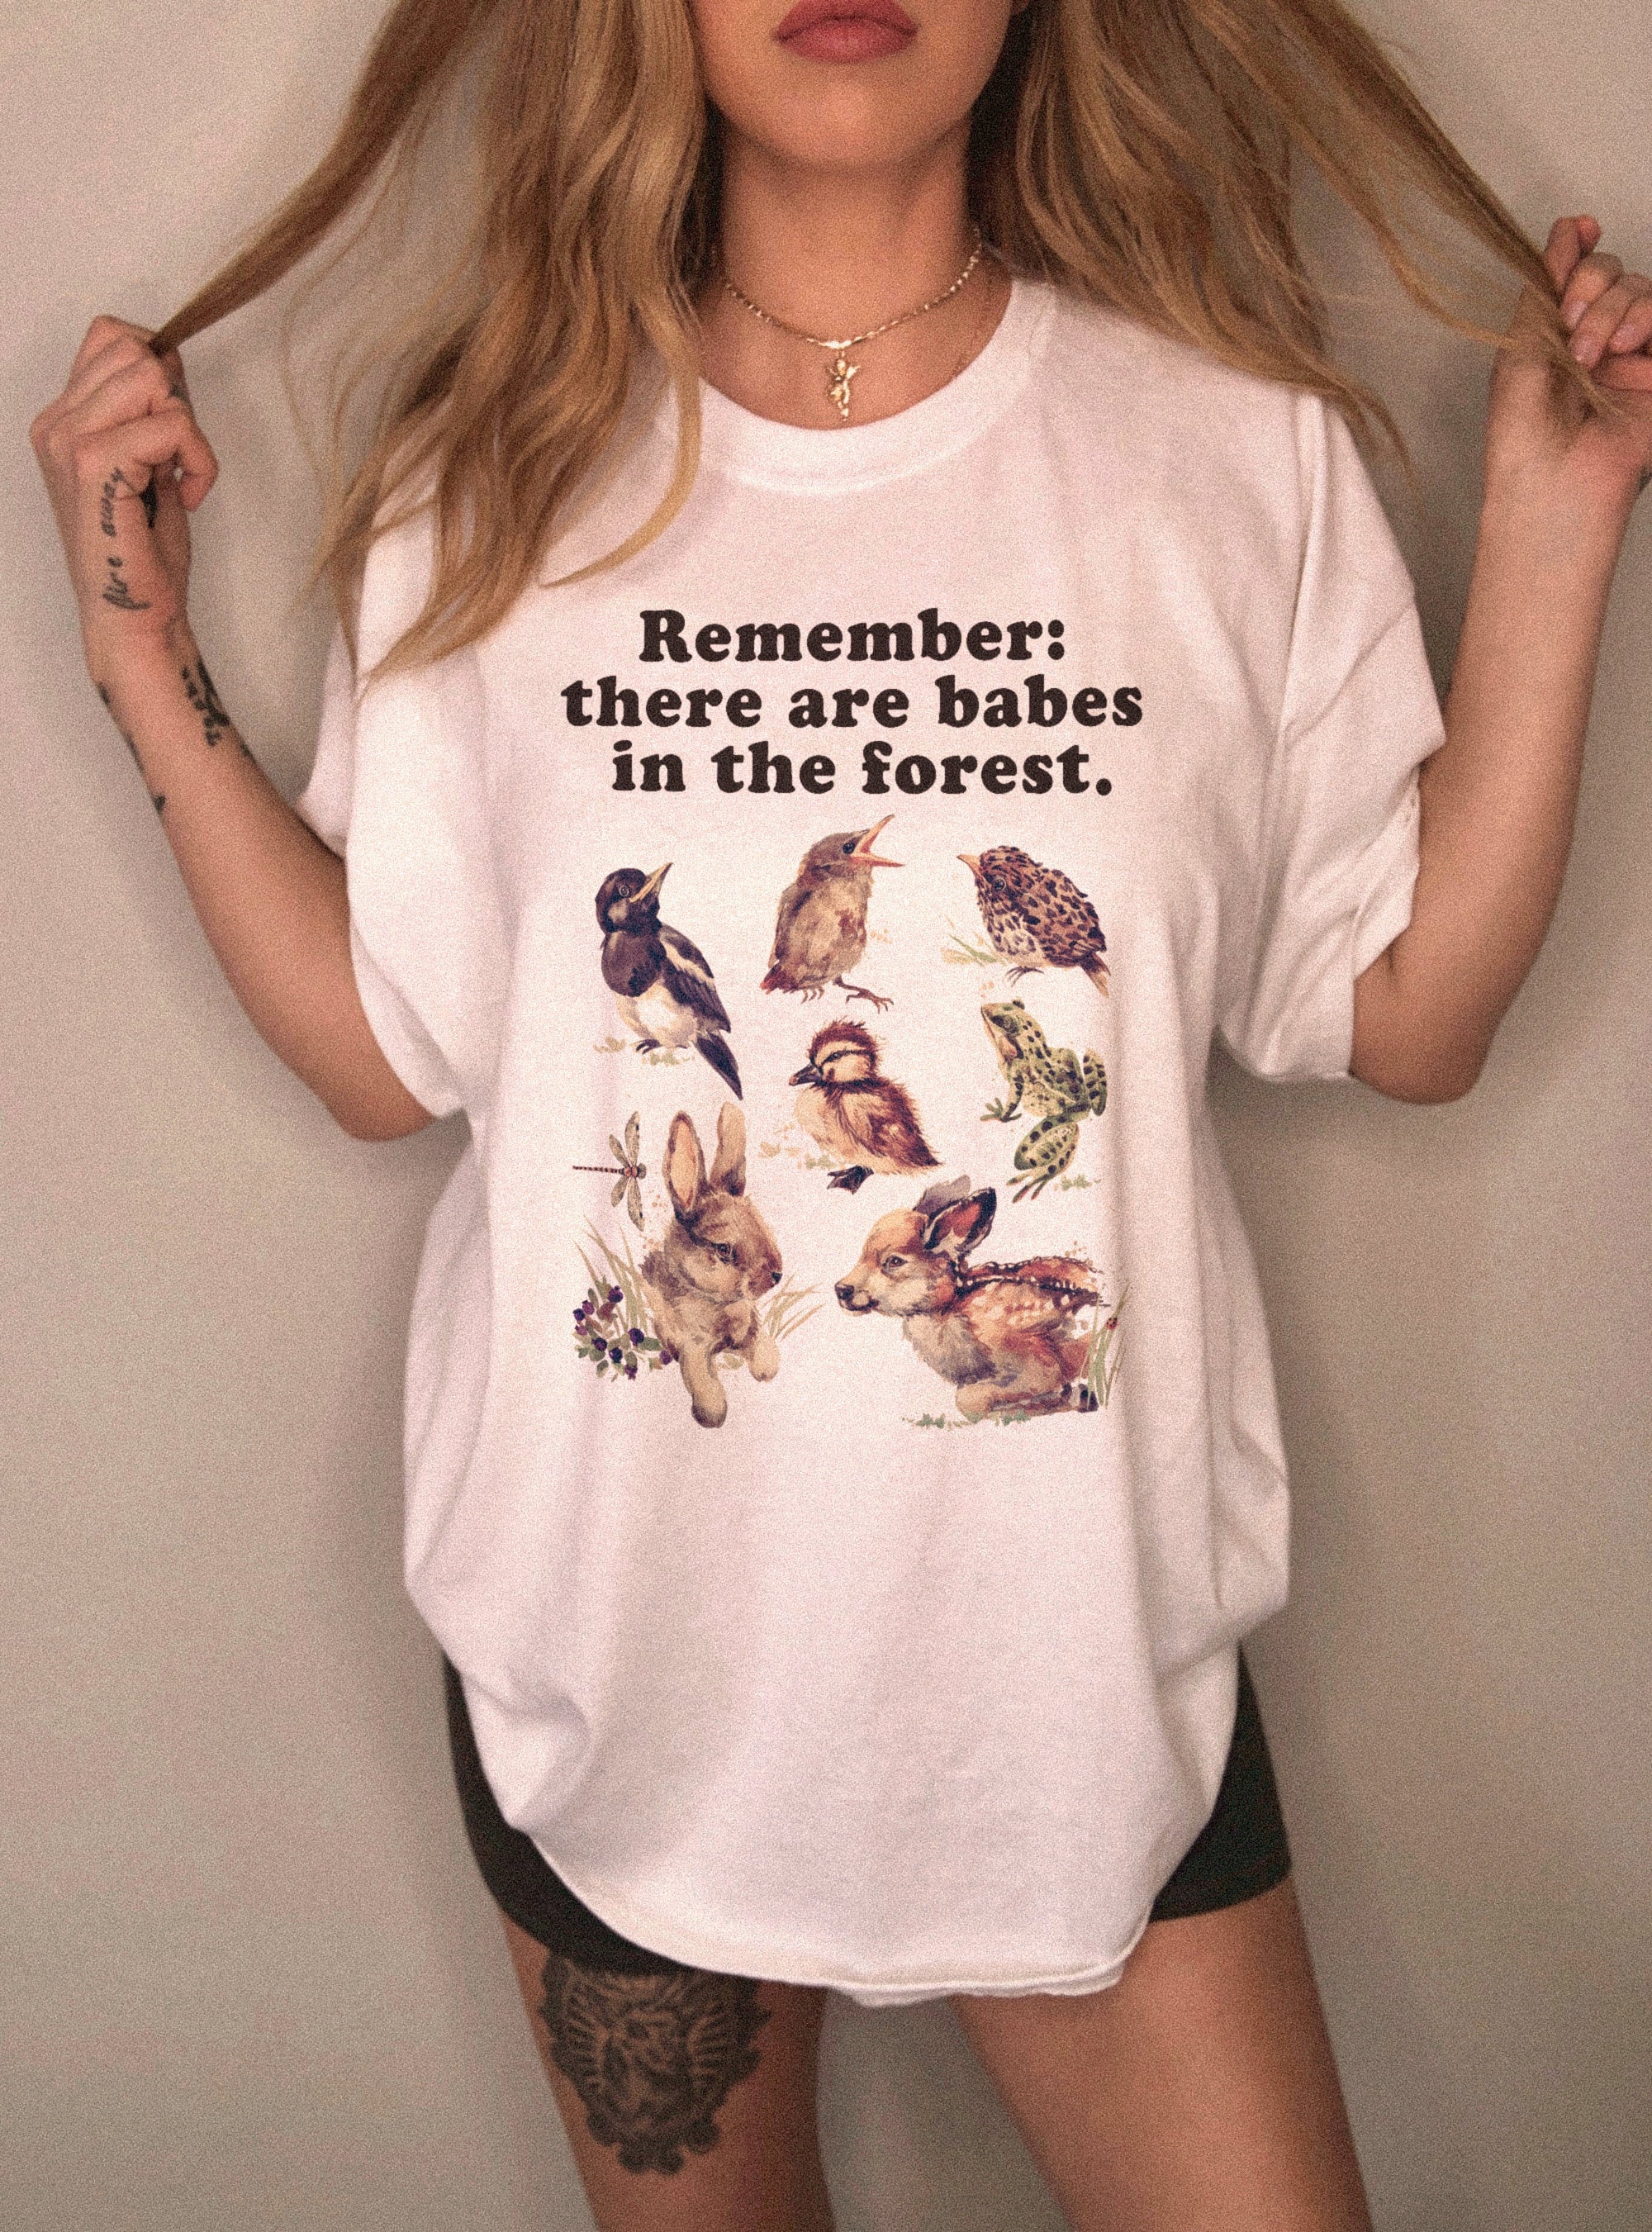 Vintage Style Forest Shirt Cottagecore Clothing Plant Shirt | Etsy